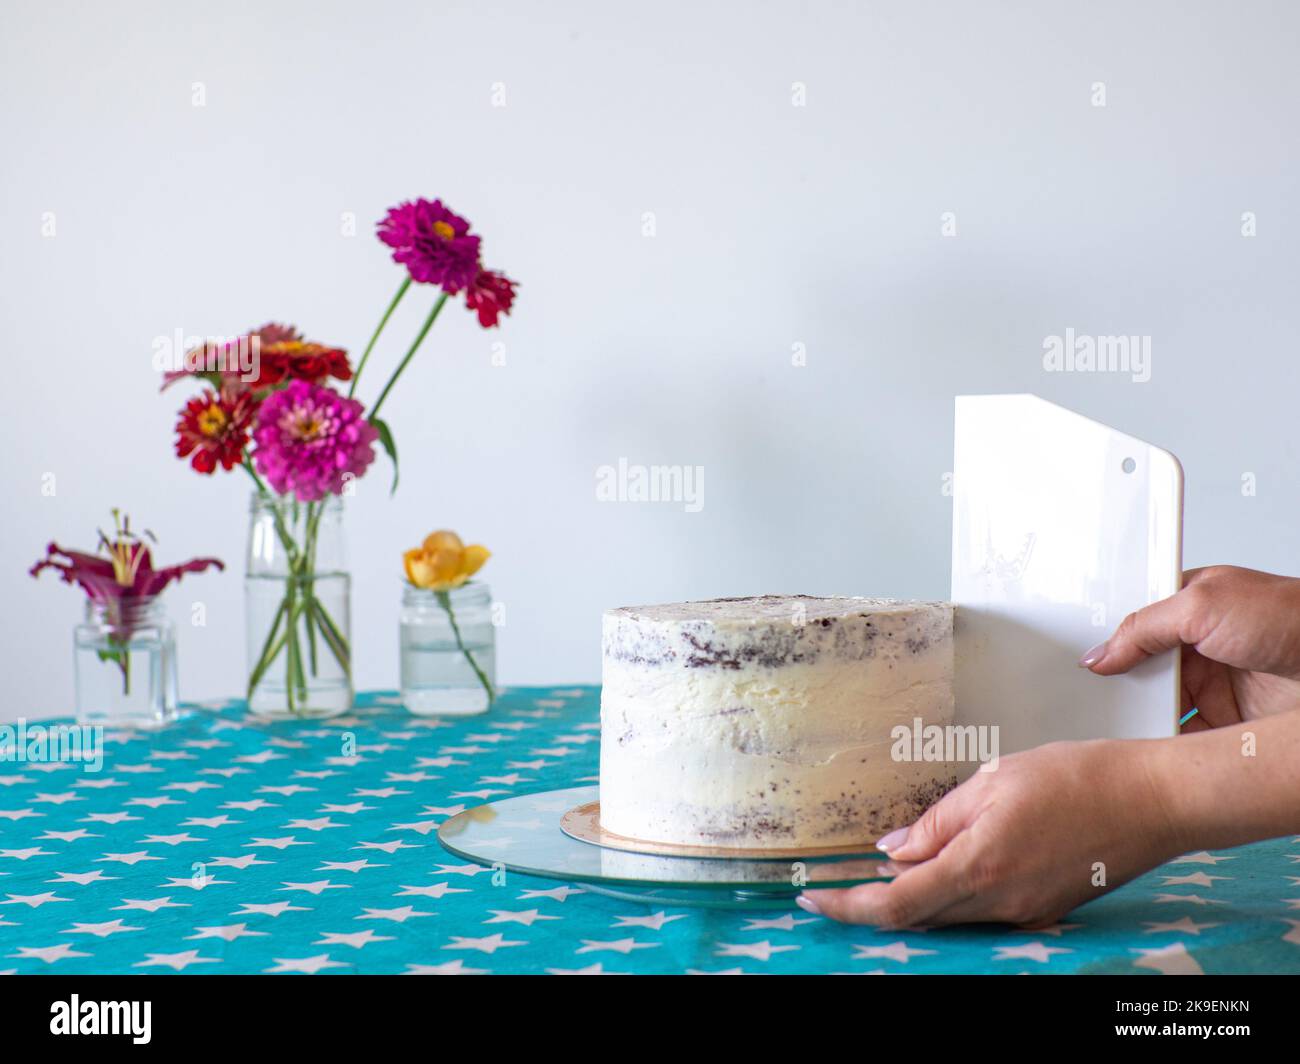 Die Creme mit einem Teigschaber von den Händen abgleichen und den runden Kuchen bedecken Stockfoto